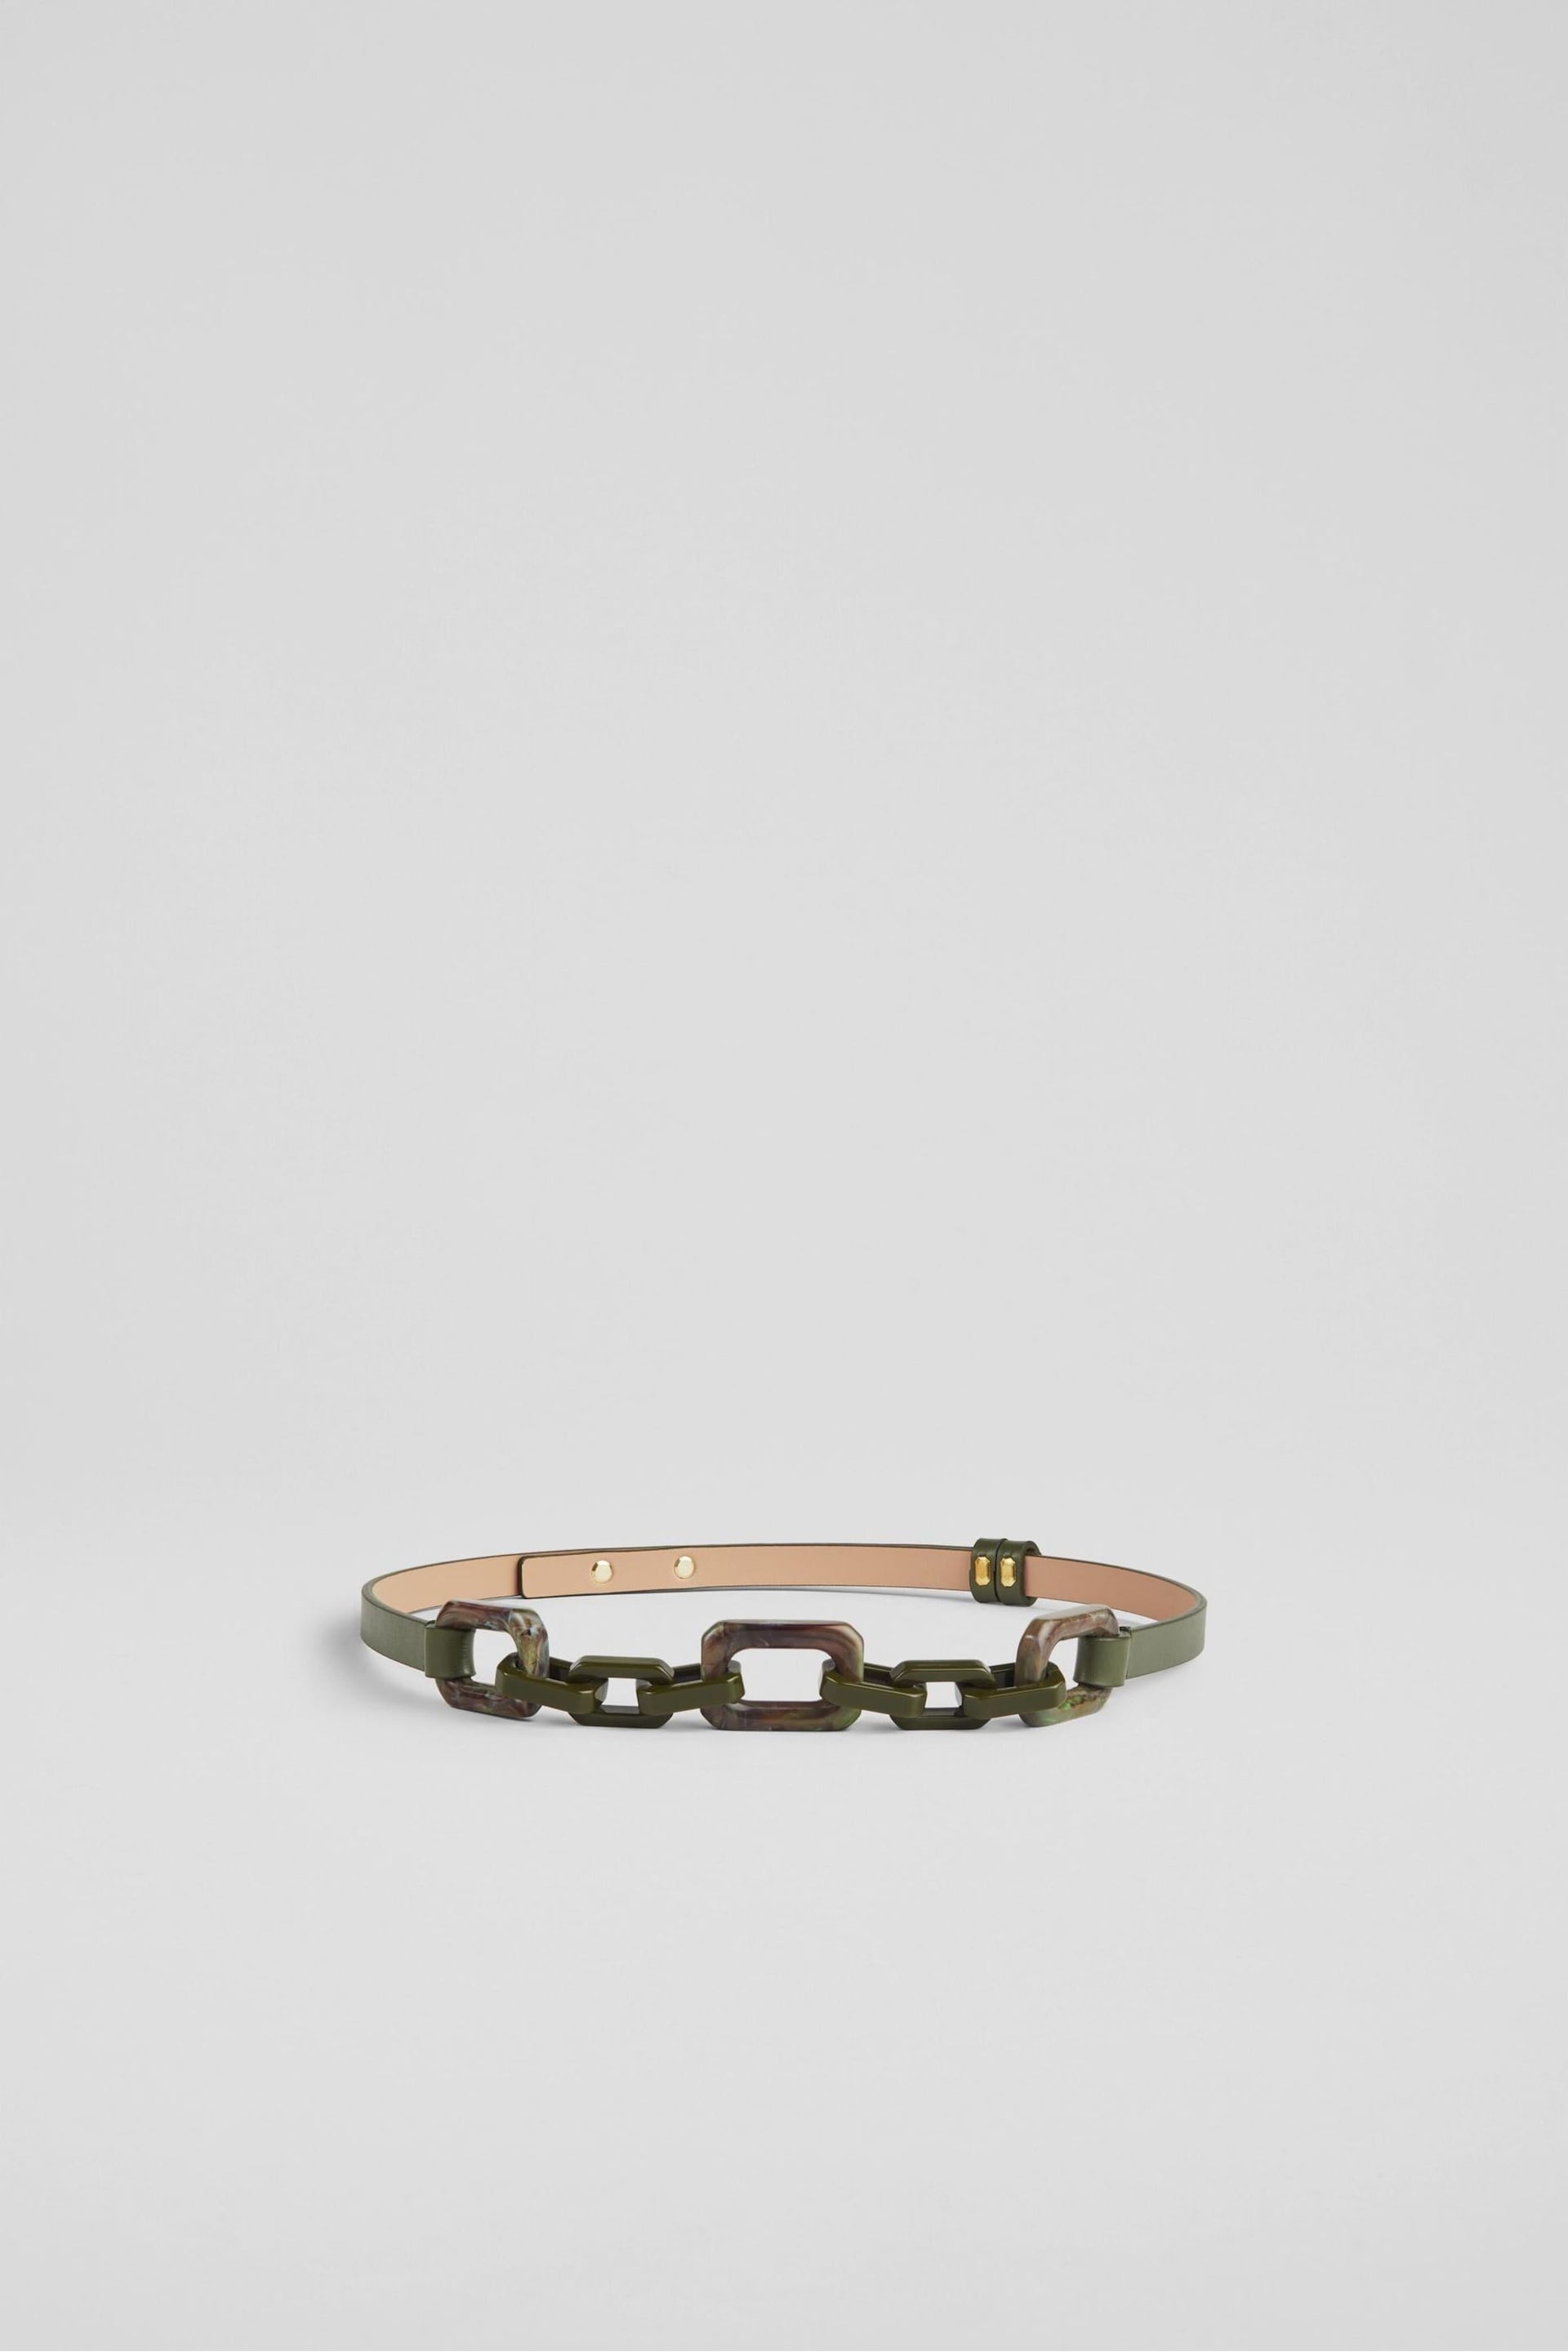 LK Bennett Green Aspen Resin Chain Leather Belt - Image 1 of 2